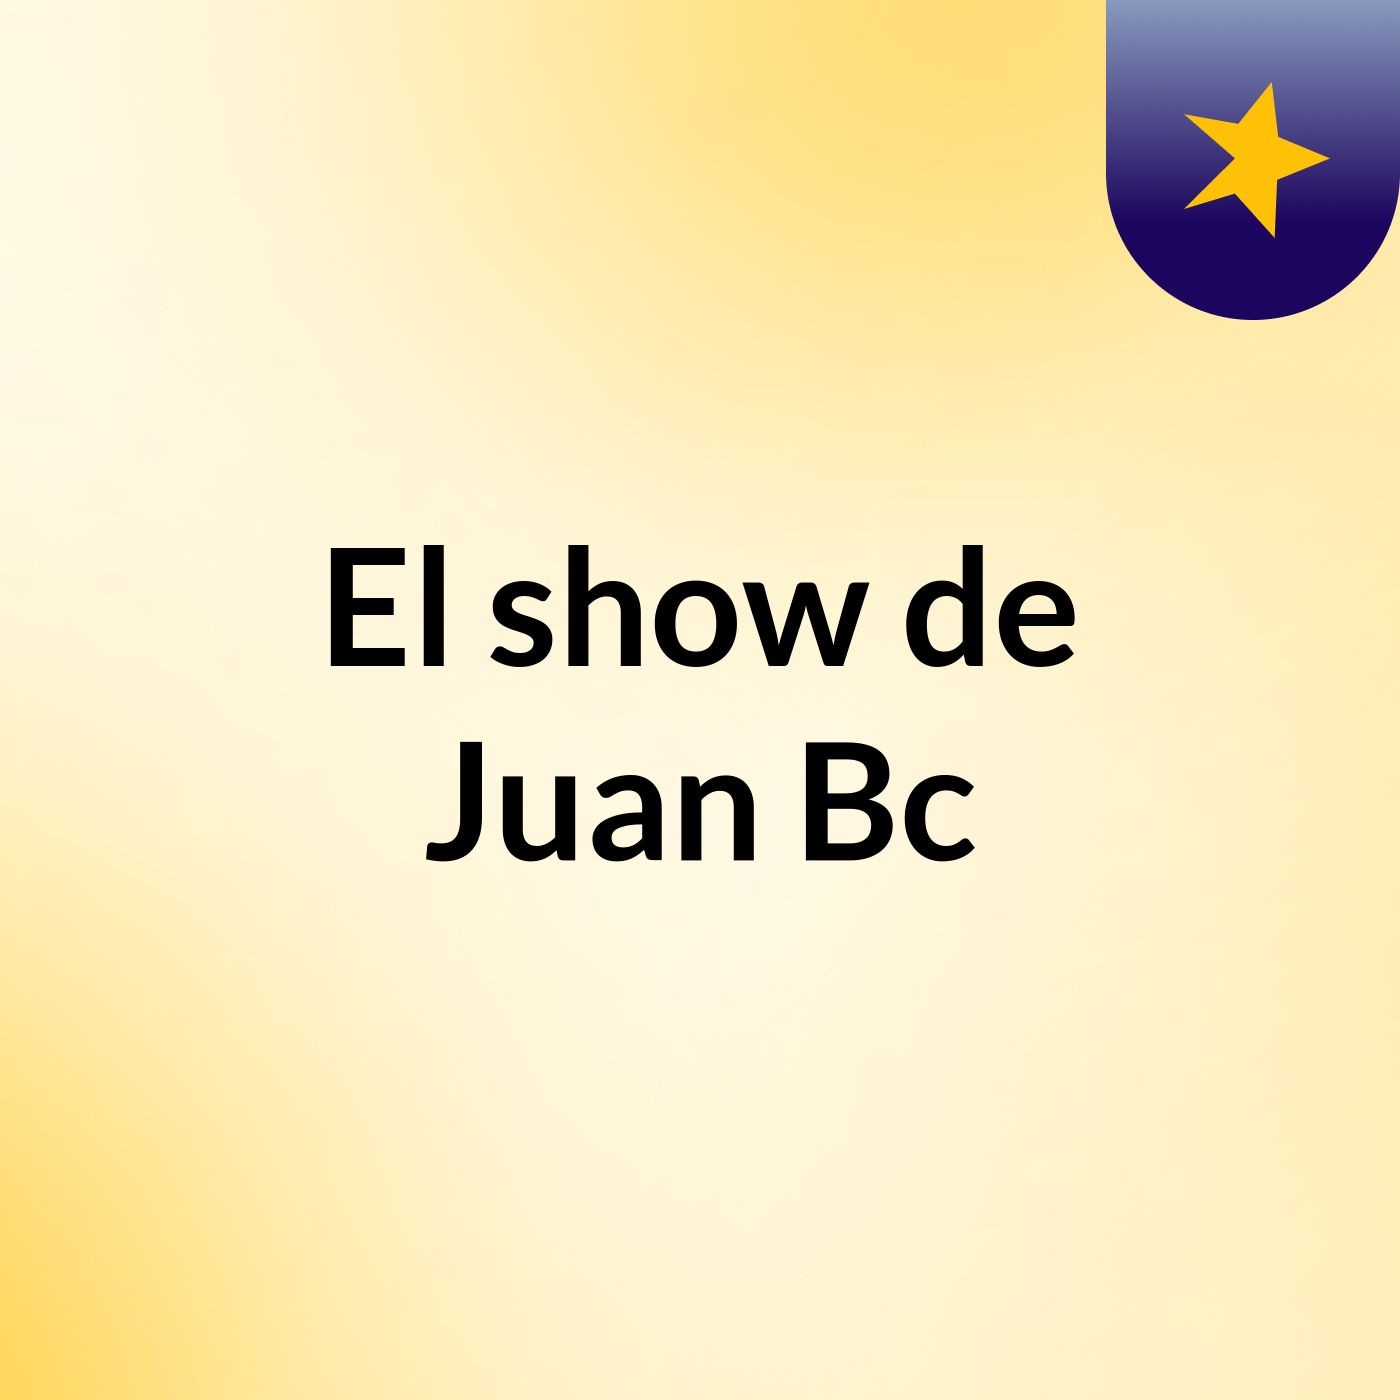 Episodio 3 - El show de Juan Bc